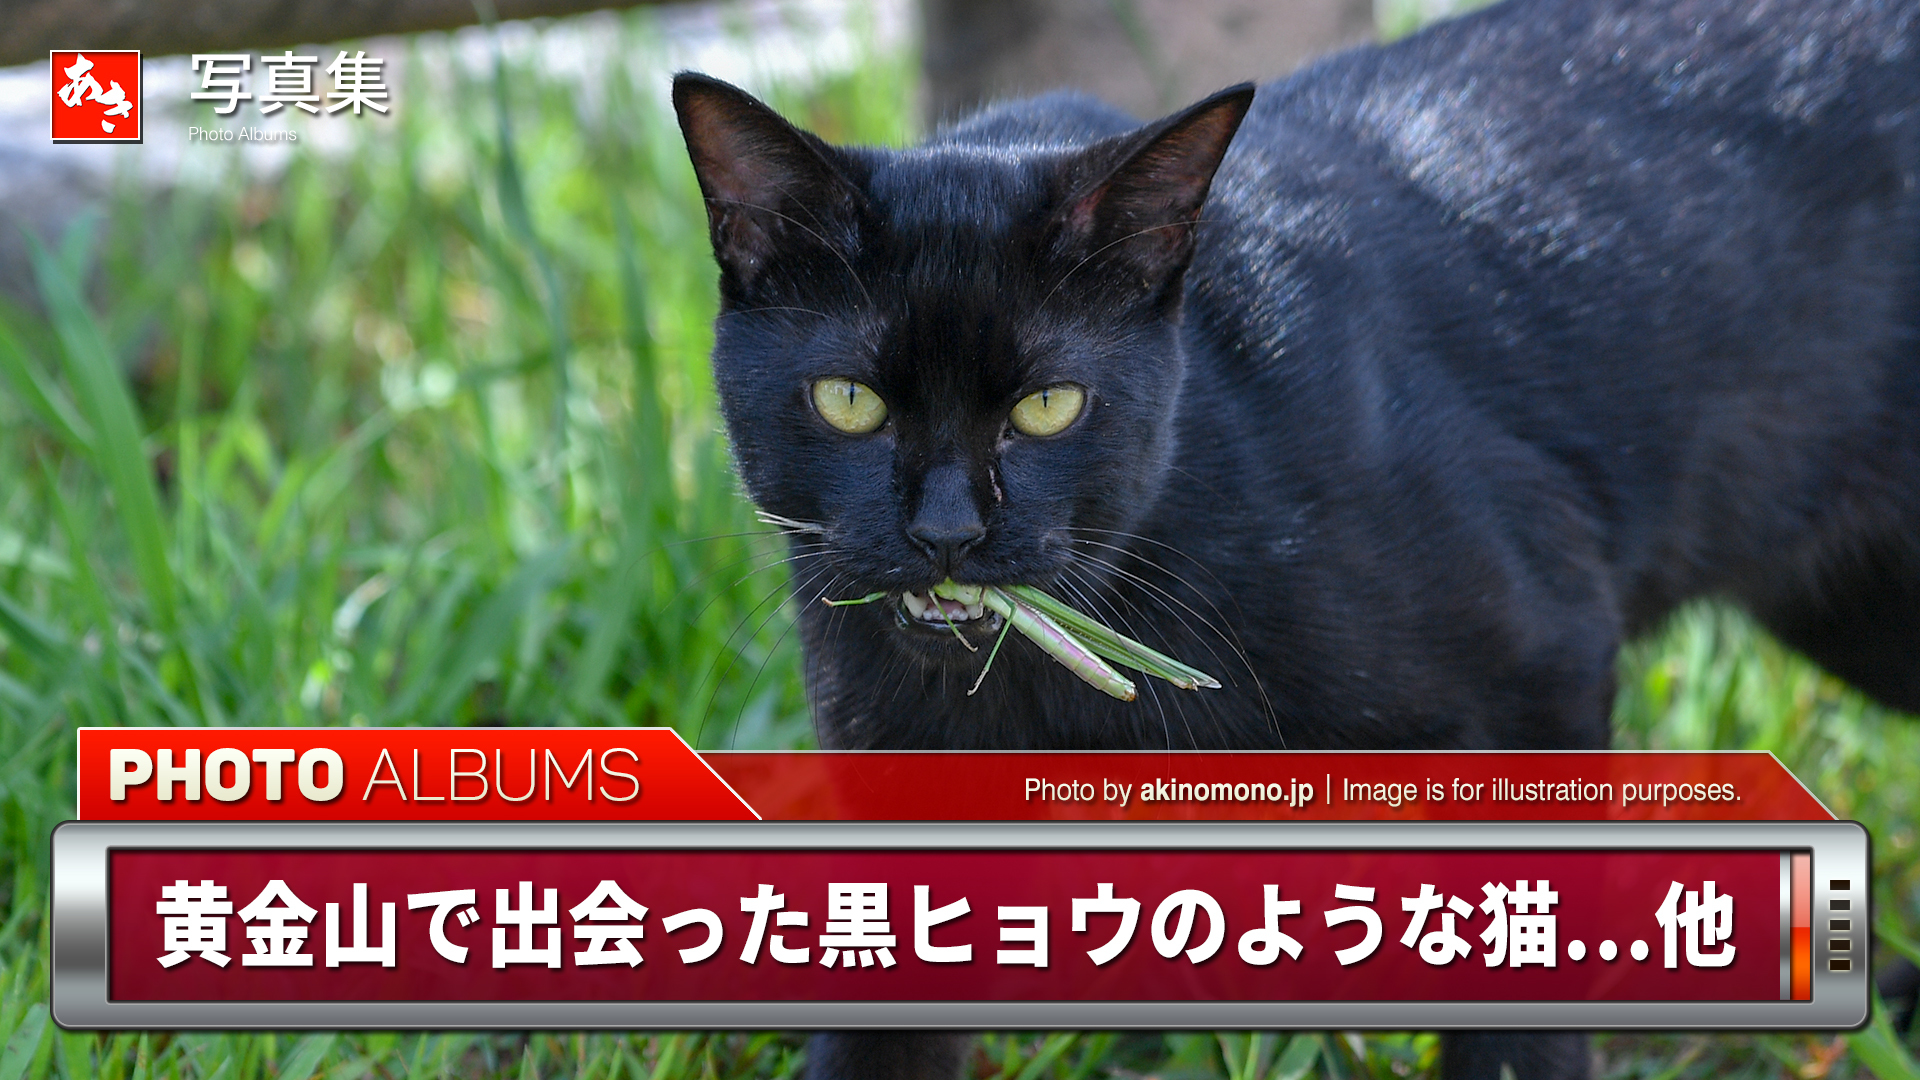 安芸のネコ歩き 黄金山で出会った黒ヒョウのような猫 他 広島市南区 安芸の者がゆく